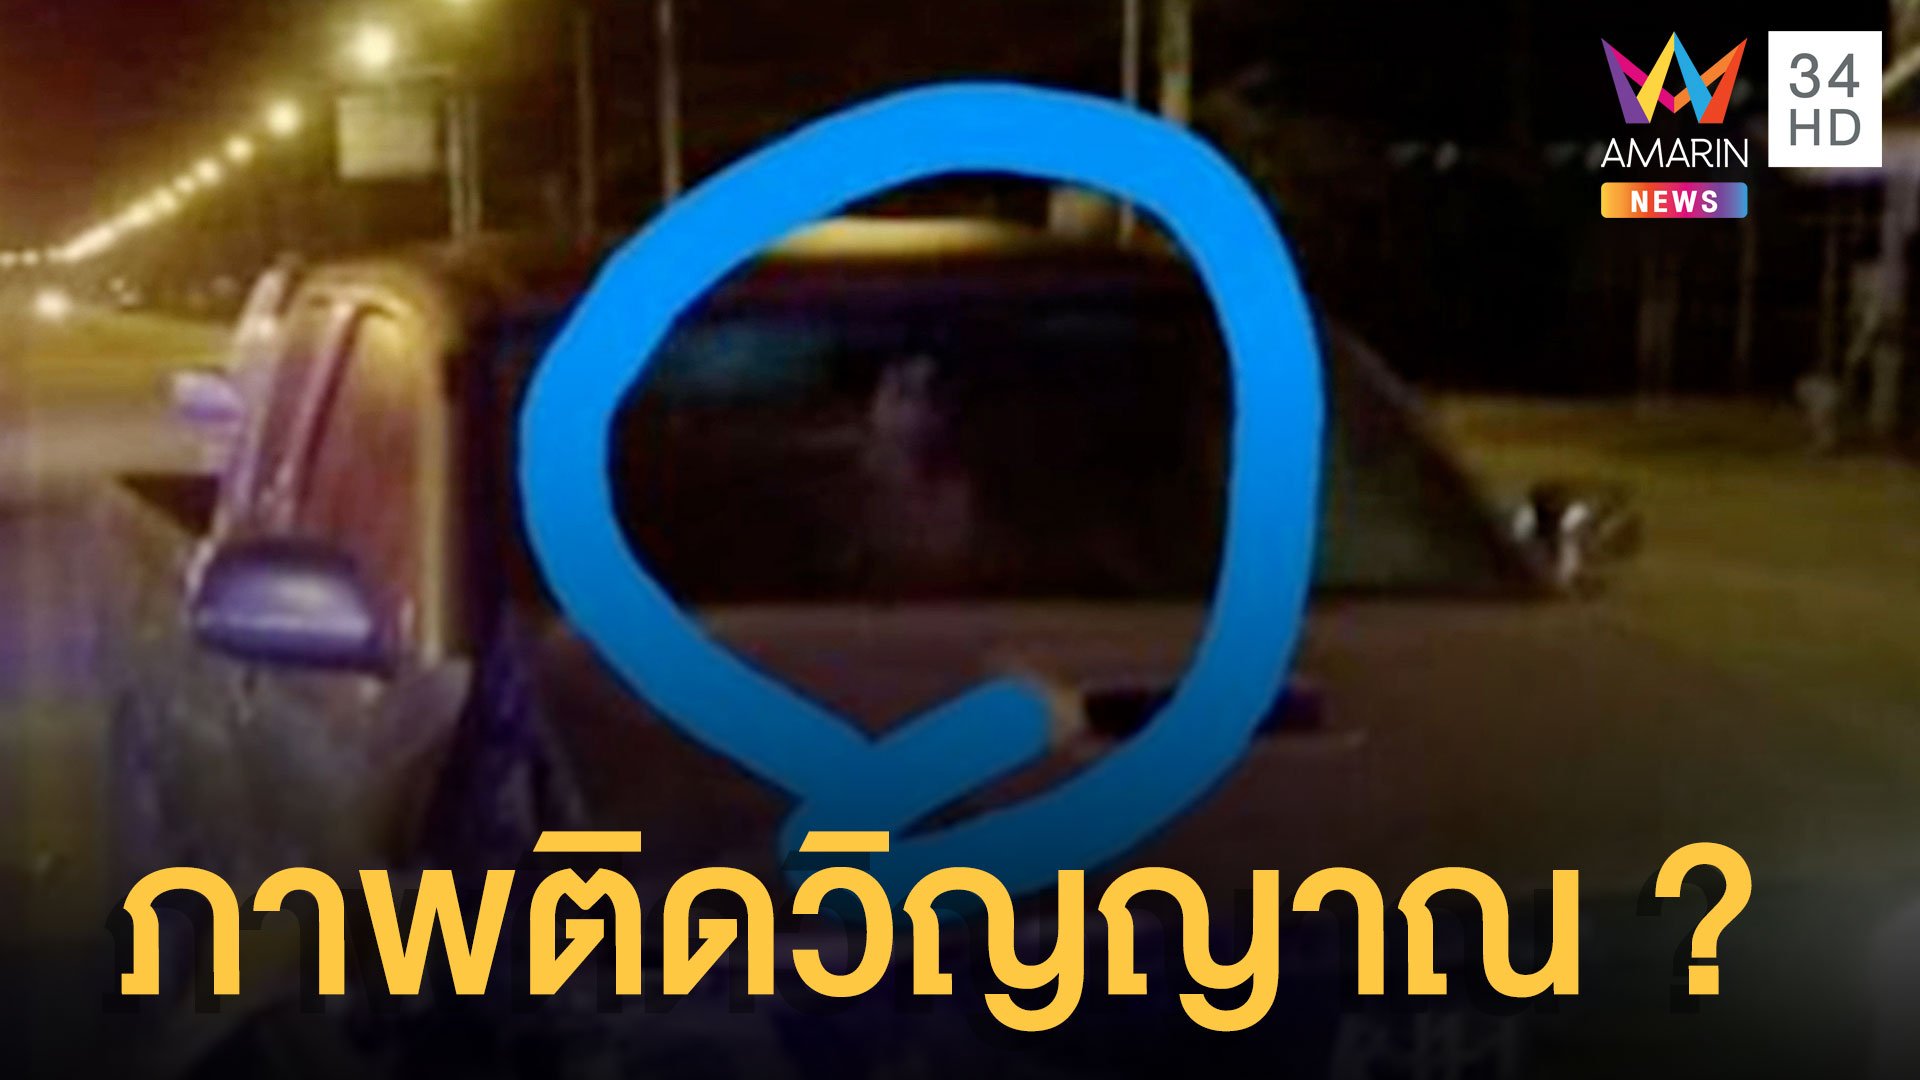 สุดหลอน! กู้ภัยเจอภาพถ่ายติดวิญญาณหลังรถชน | ข่าวอรุณอมรินทร์ | 14 ก.พ. 65 | AMARIN TVHD34